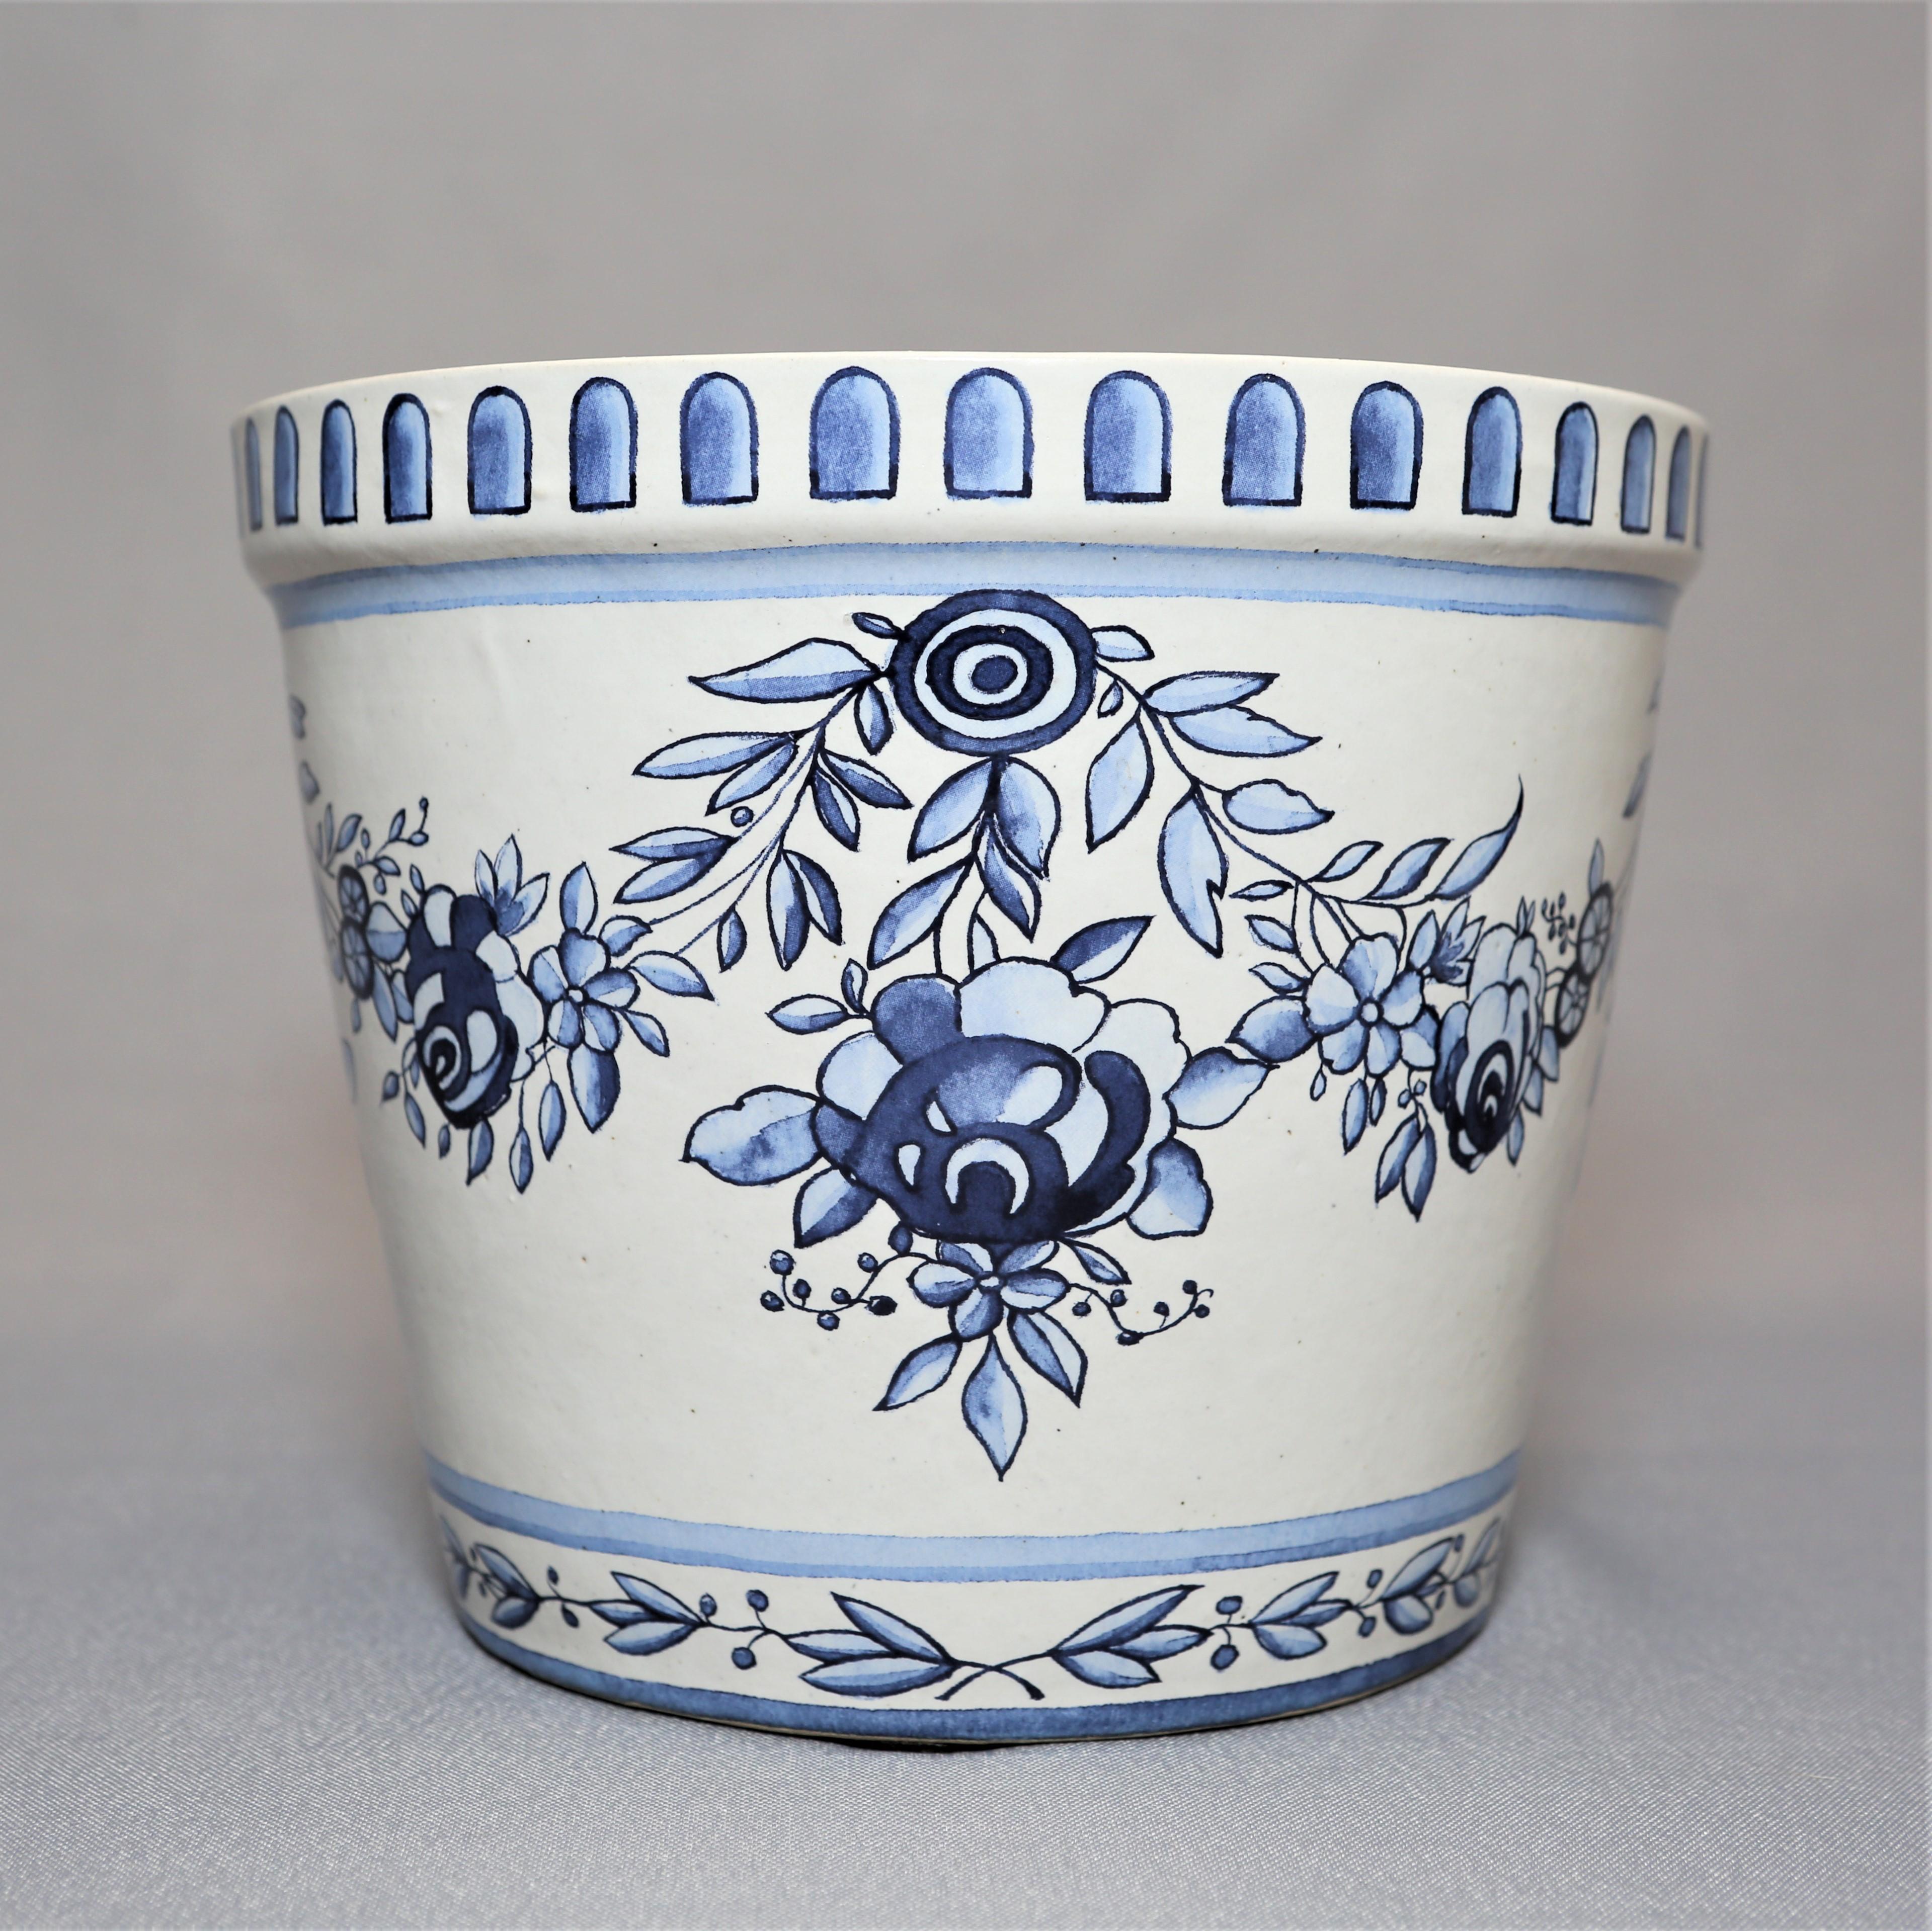 Reproduction faite à la main des pots de fleurs originaux de Marie-Antoinette du 18e siècle avec soucoupes en grès émaillé bleu et blanc, résistant au gel. Créé à l'origine pour les jardins du château de Versailles. Emballé dans une boîte avec le